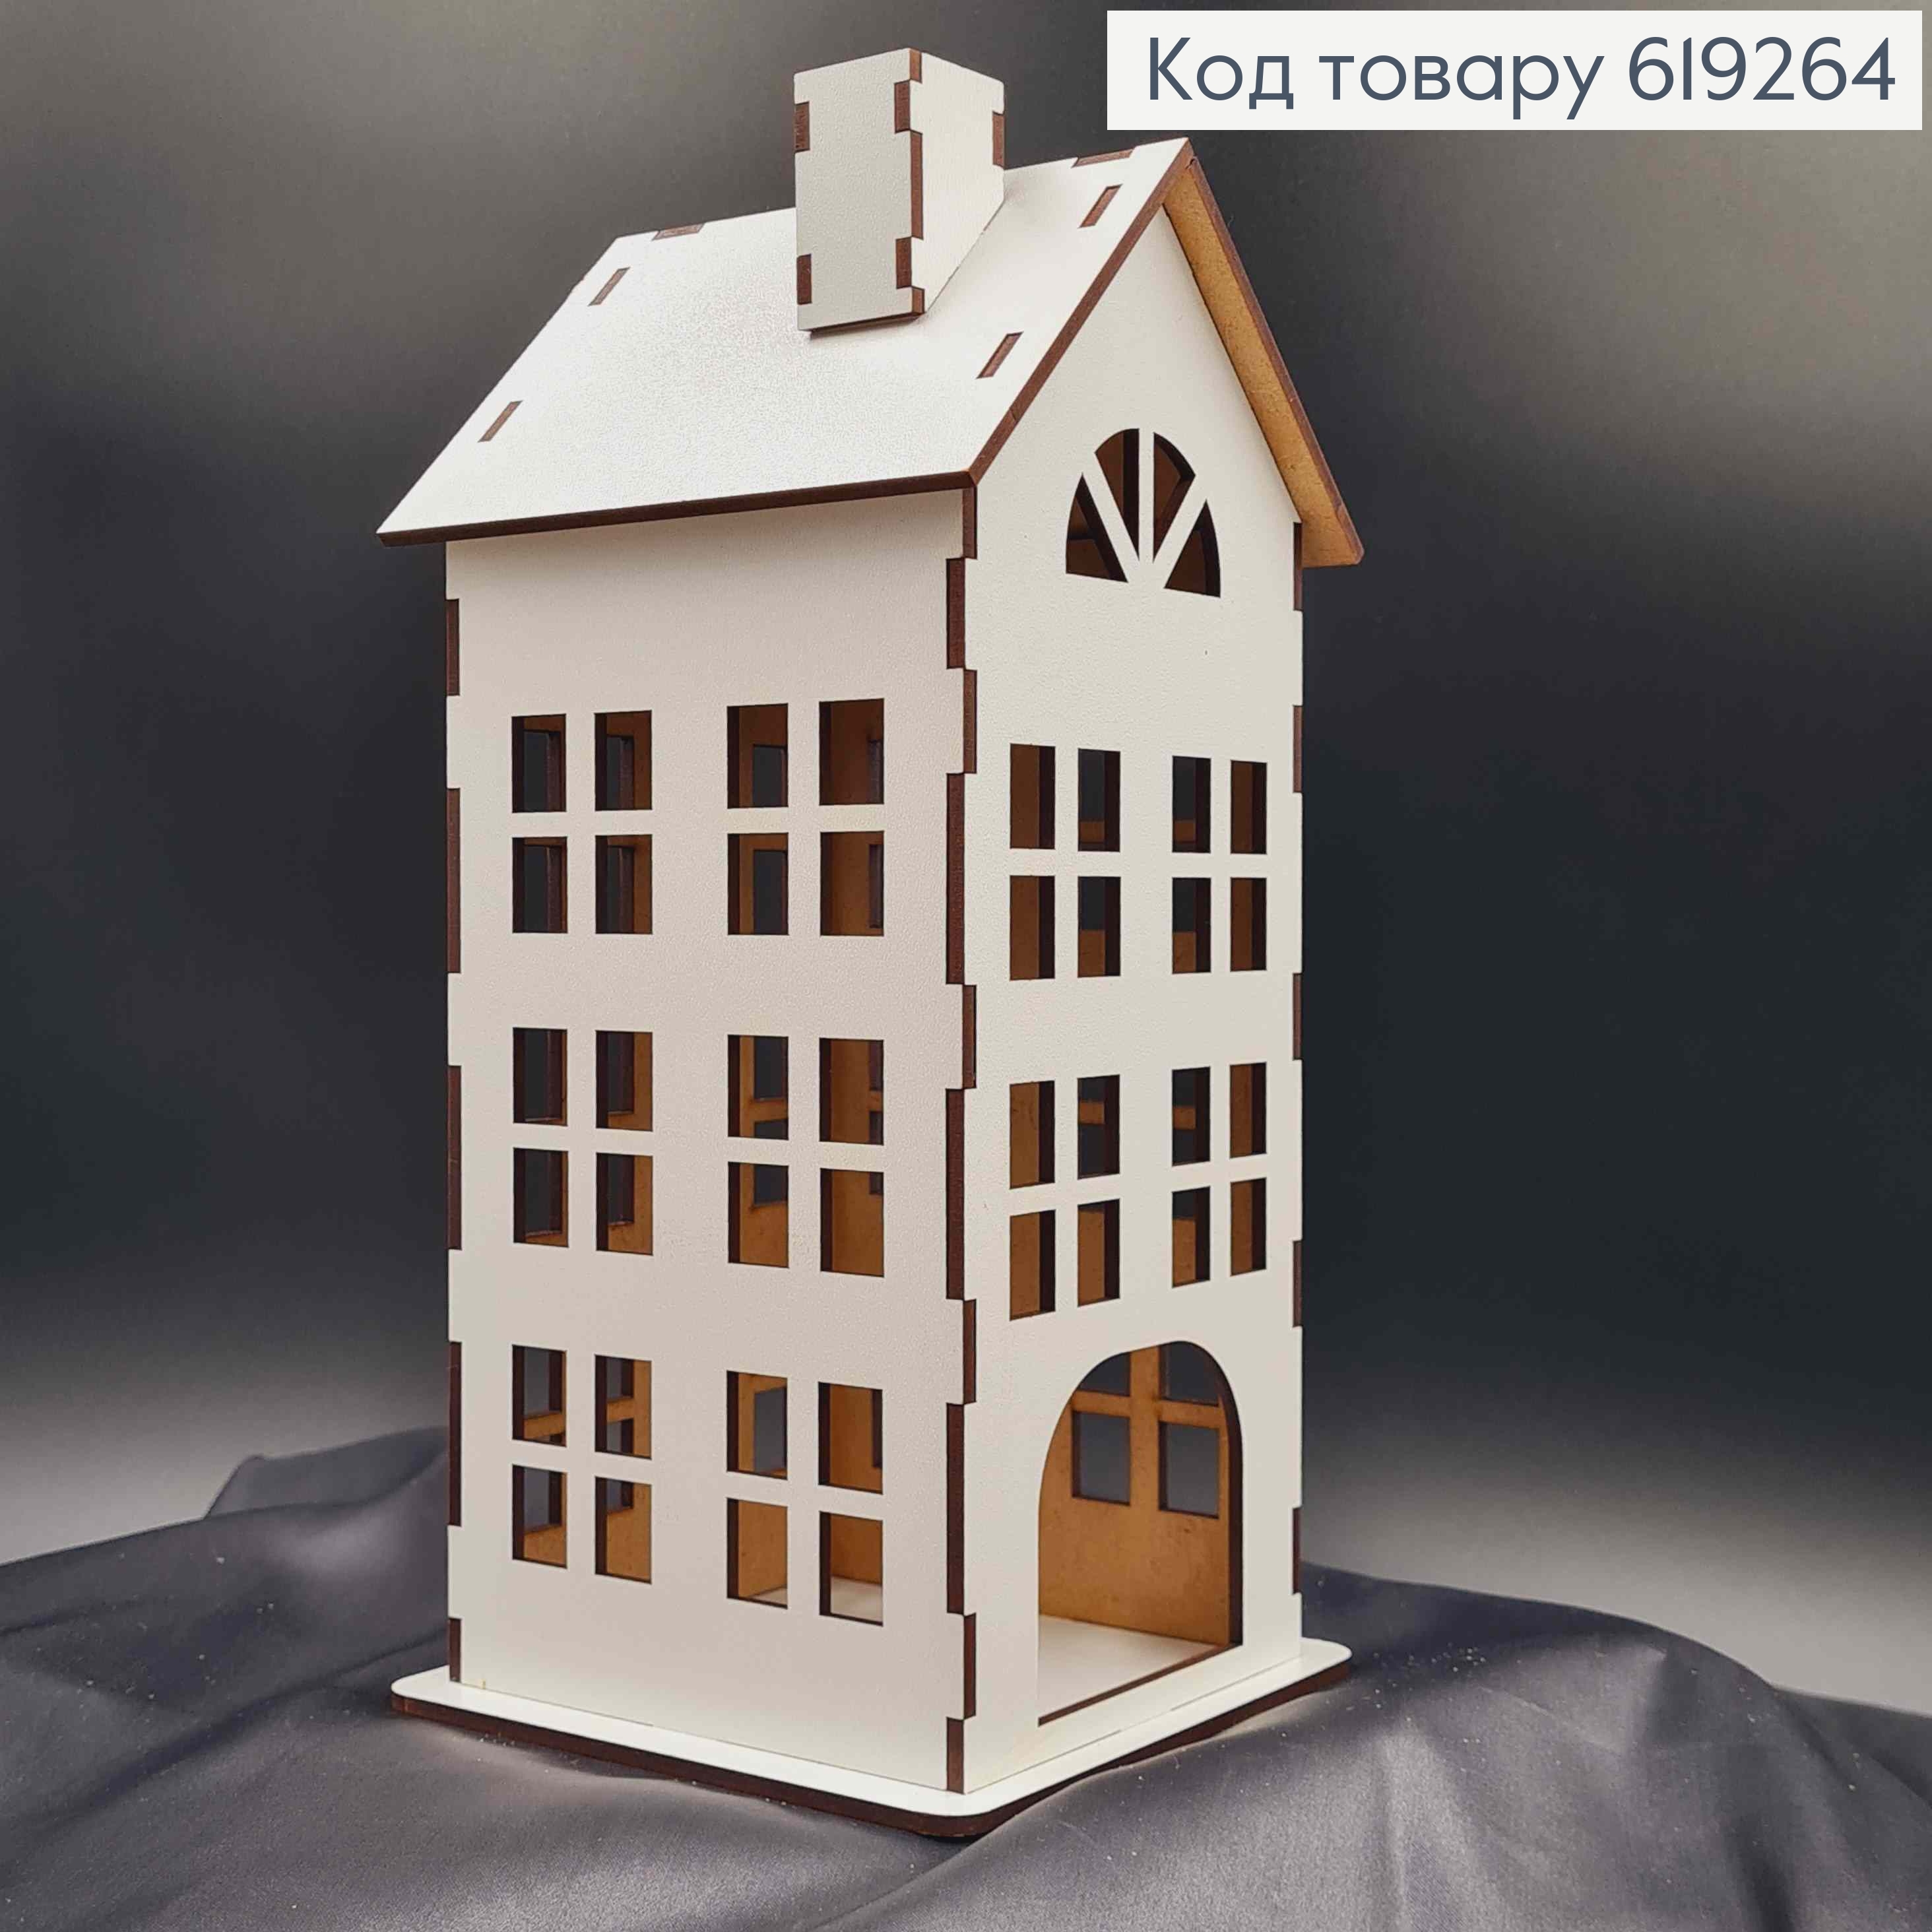 Подсвечник, деревянный белый домик, многоэтажка, классический, 25*12см, Украина 619264 фото 2